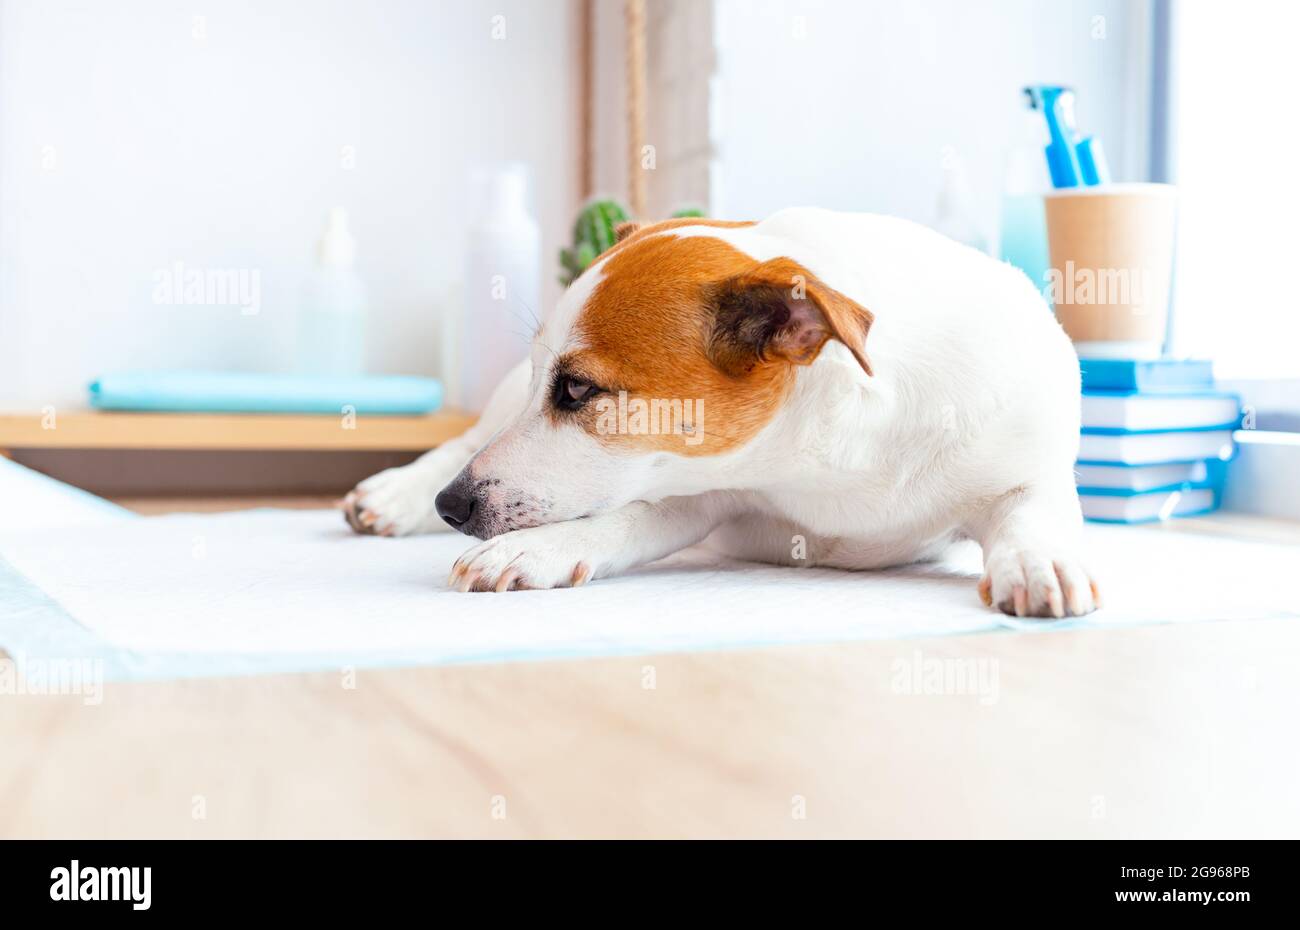 Jack russell chien terrier allongé sur la table à la réception à la clinique vétérinaire. Le chien est en attente d'examen par le médecin vétérinaire. Santé des animaux Banque D'Images